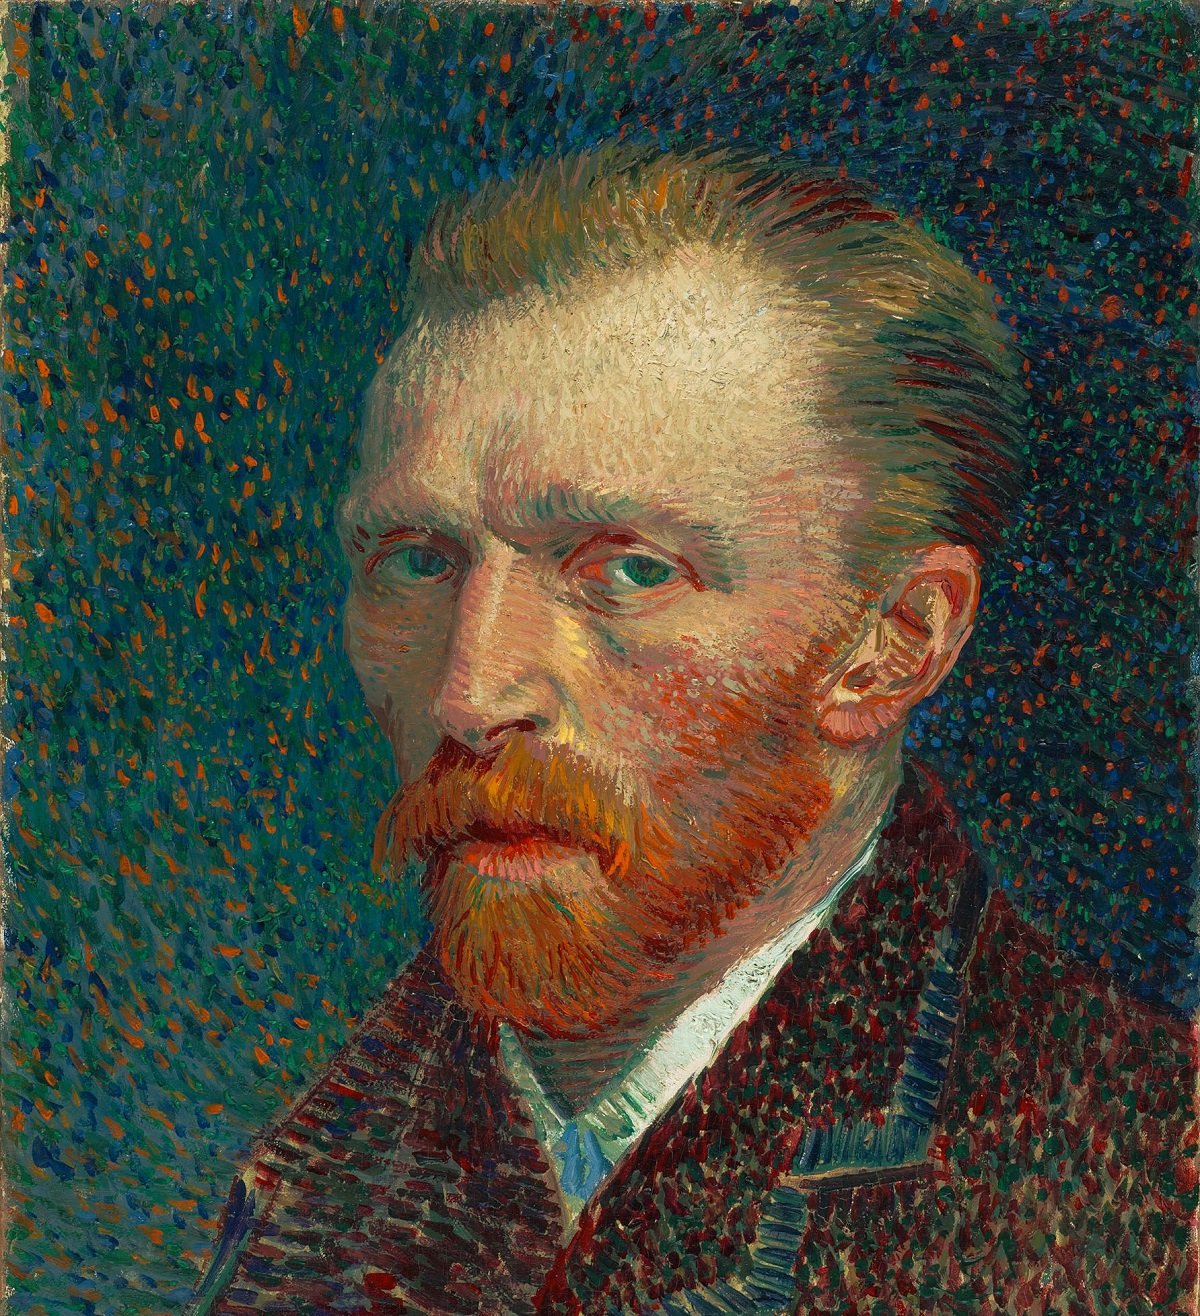 Personenbeschreibung am Beispiel von Vincent van Gogh